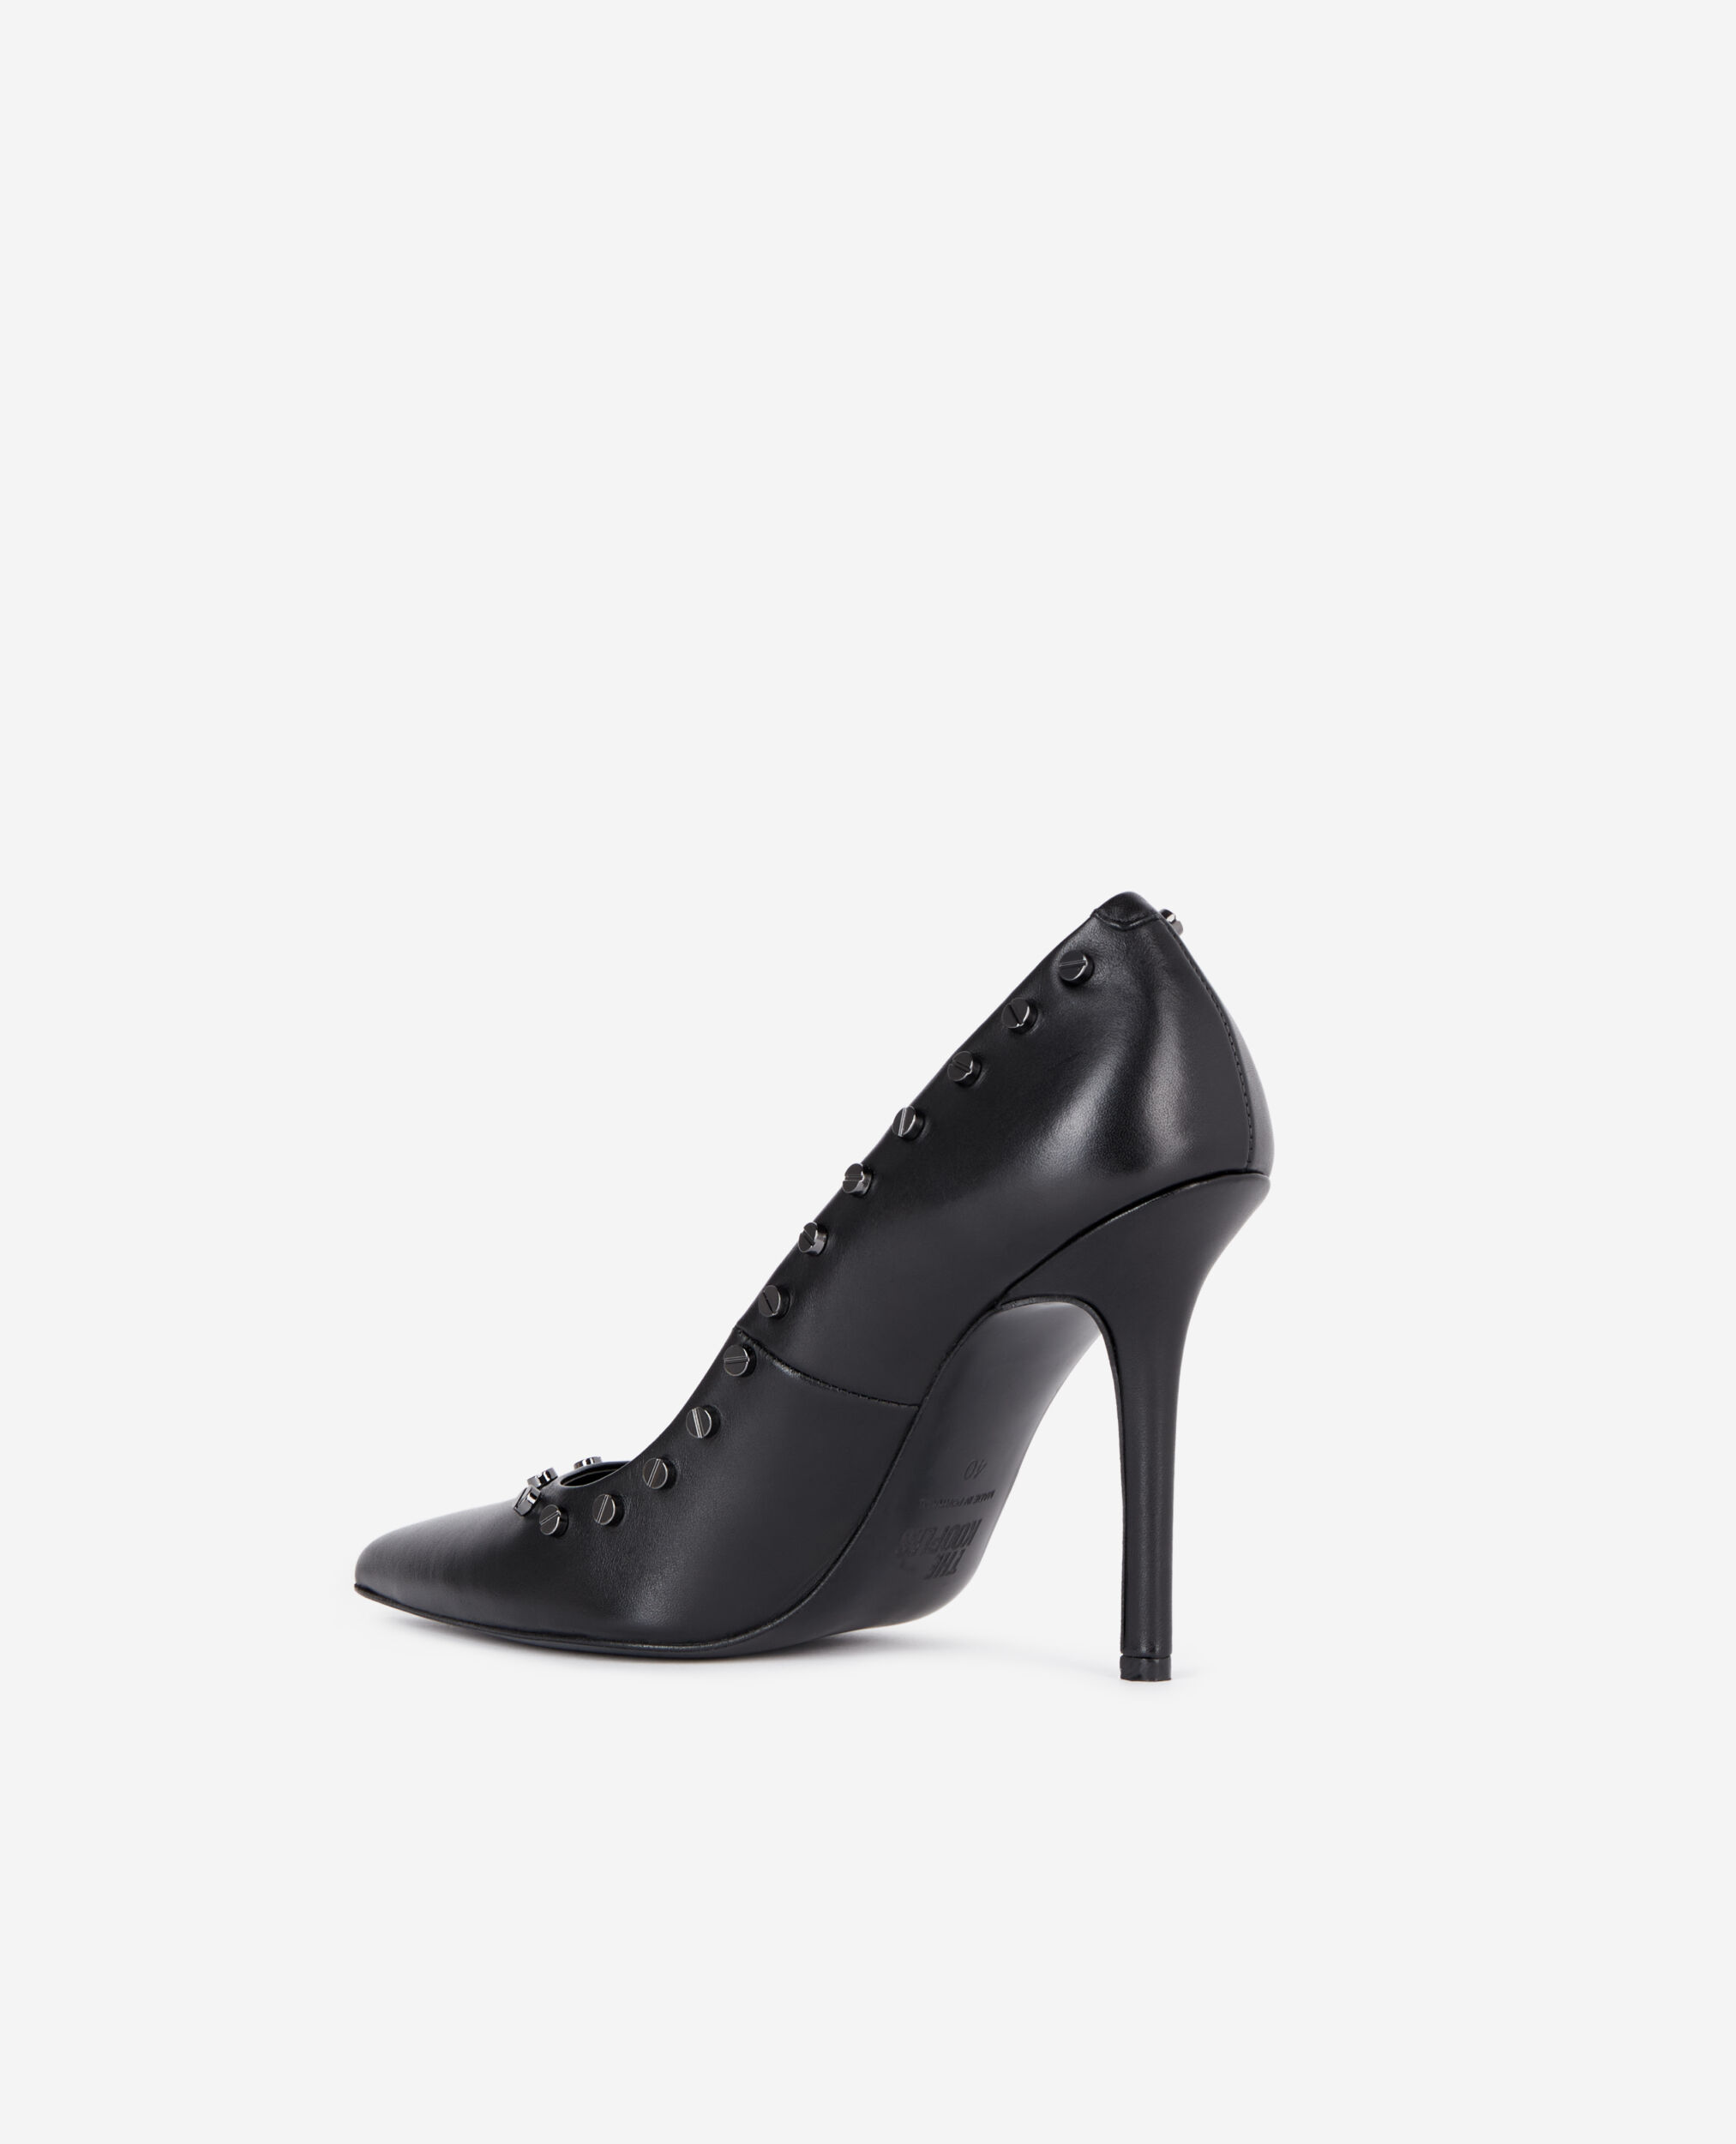 Zapatos tacón piel negros tachuelas, BLACK, hi-res image number null